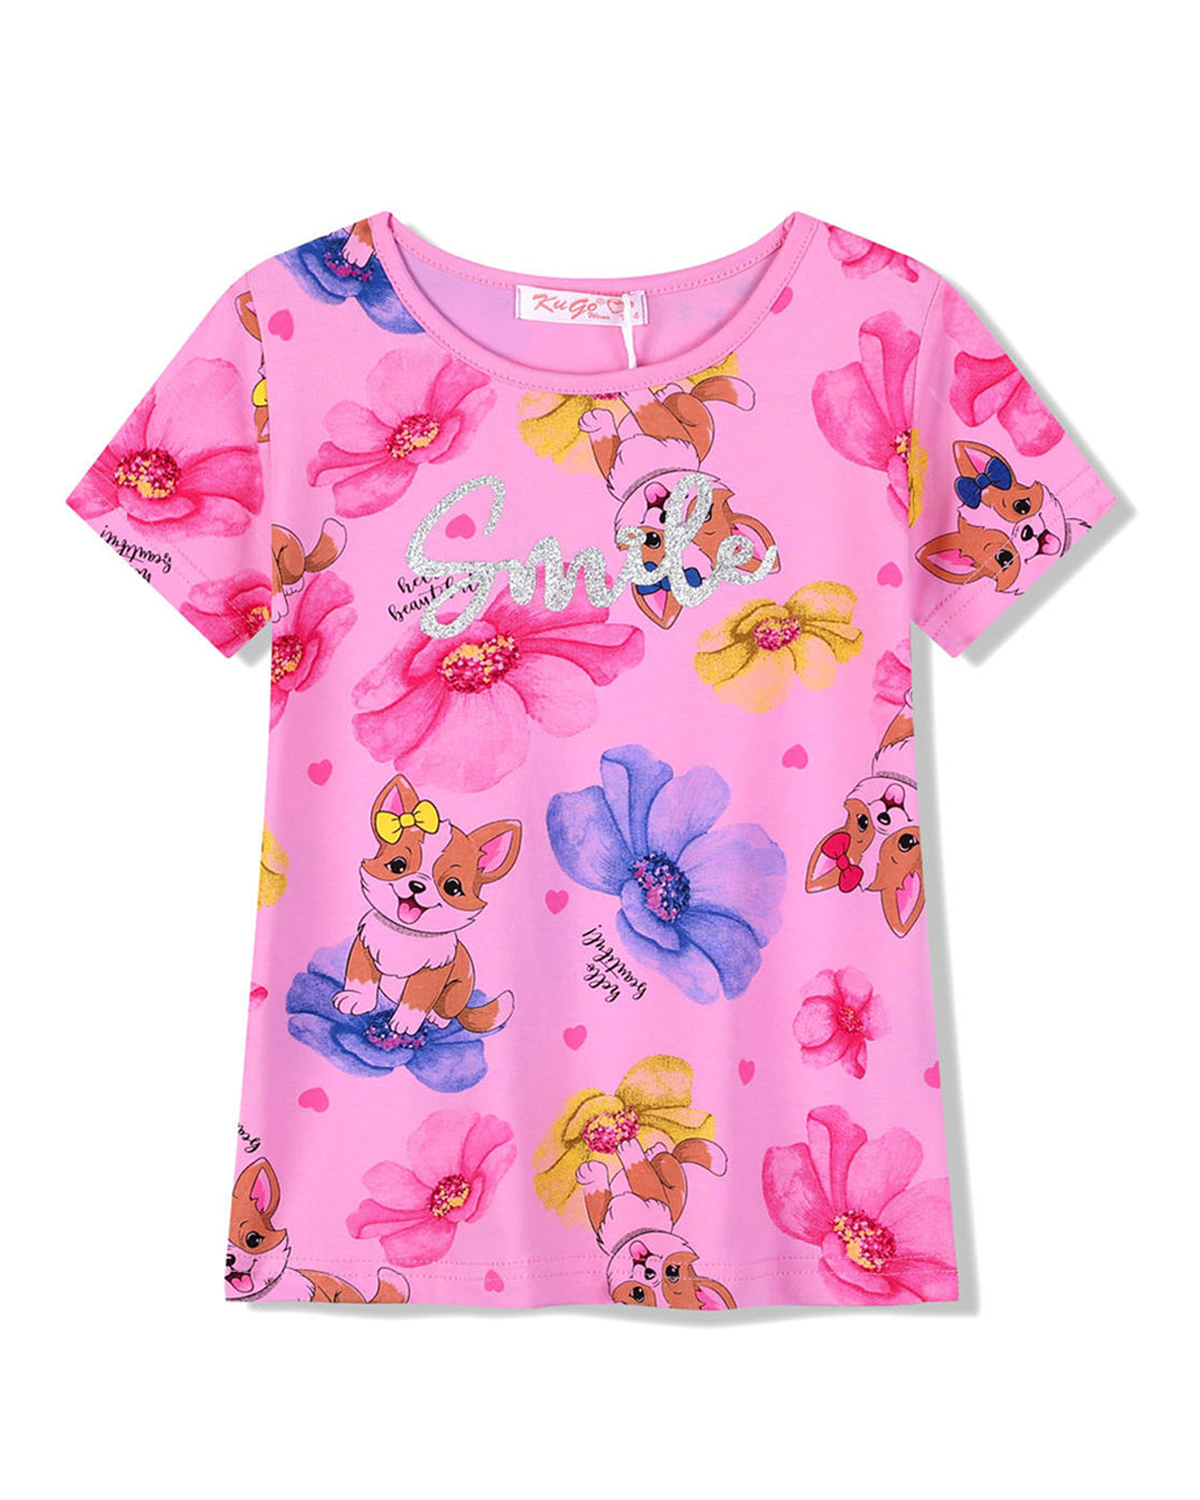 Dívčí tričko - KUGO FC1059, růžová Barva: Růžová, Velikost: 122